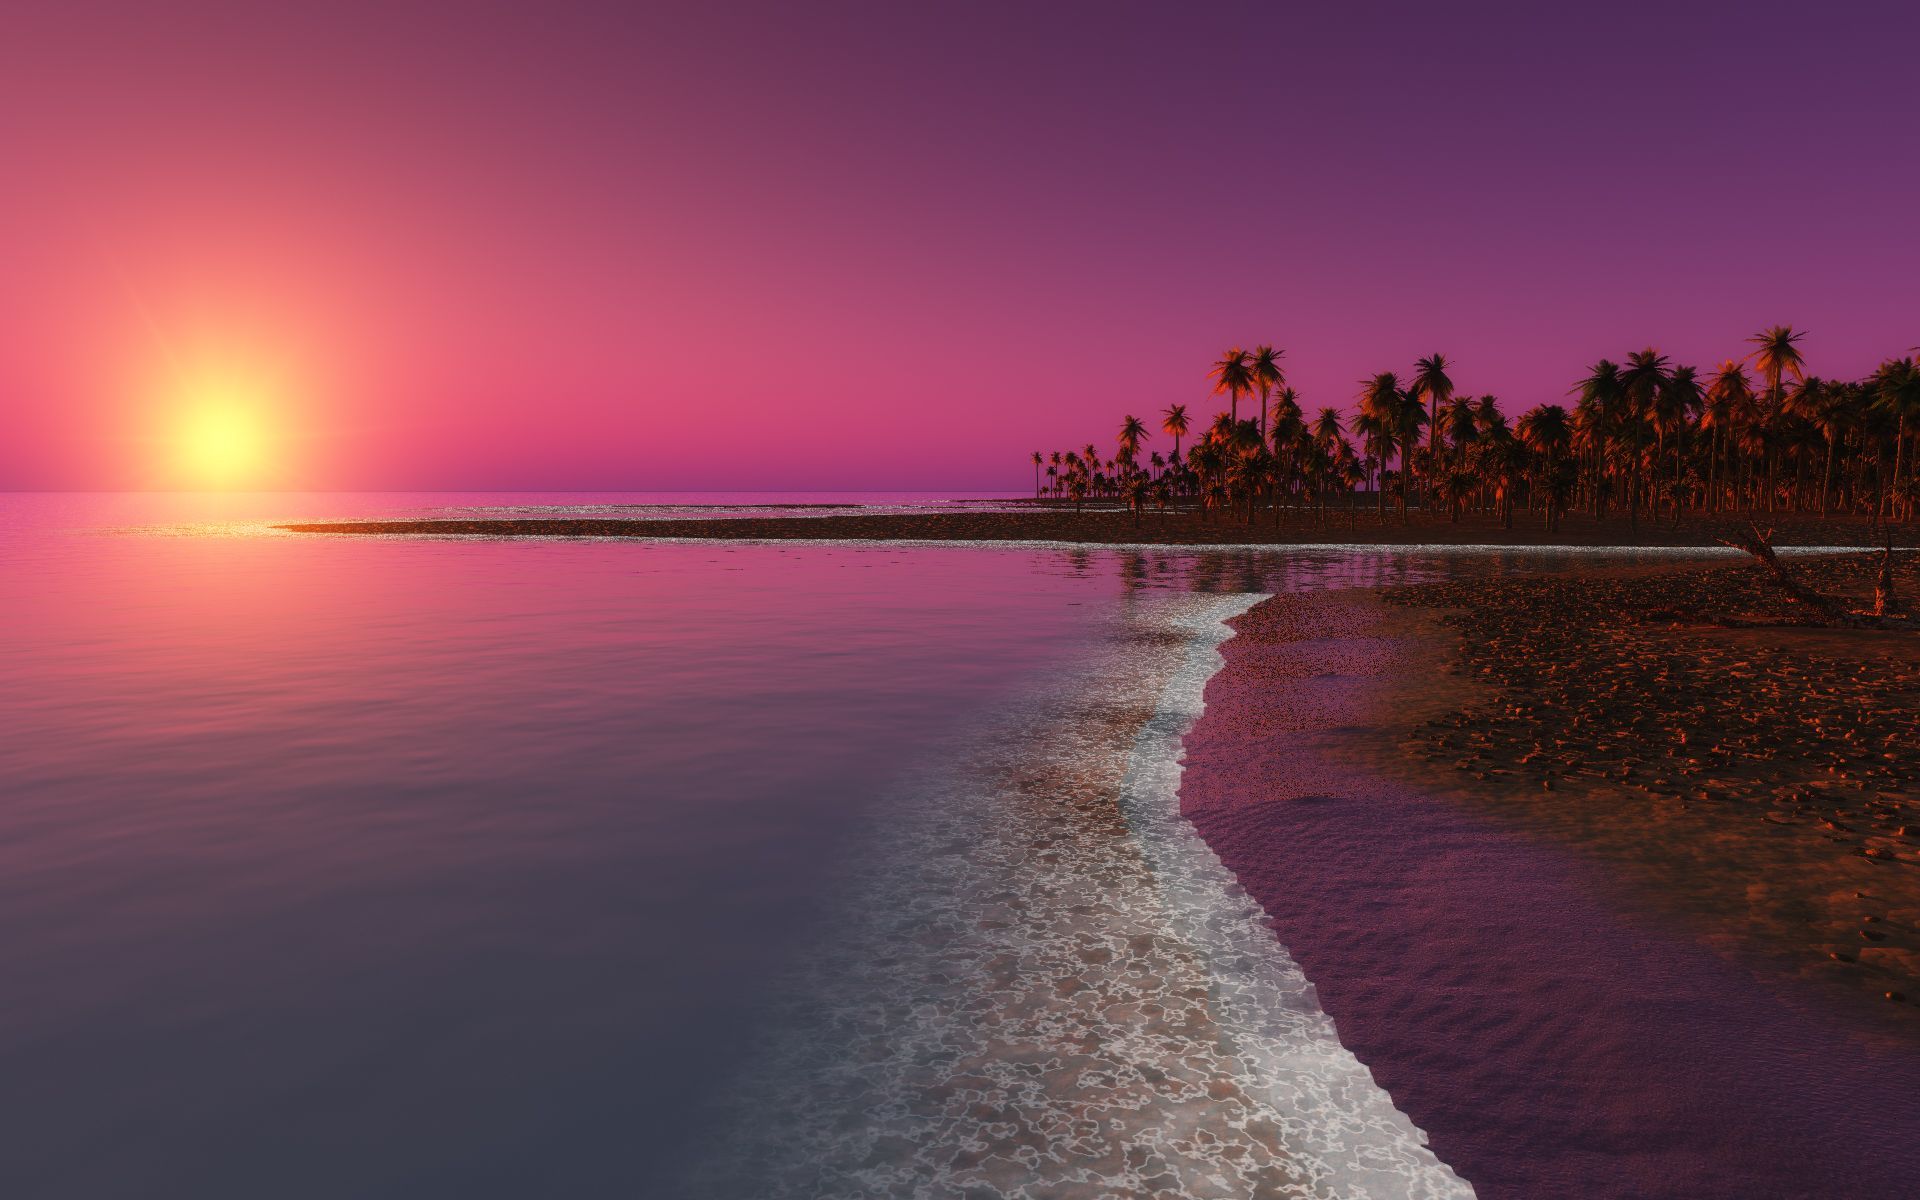 Beaches & Islands HD Wallpapers | Beach Desktop Backgrounds,Stock ...